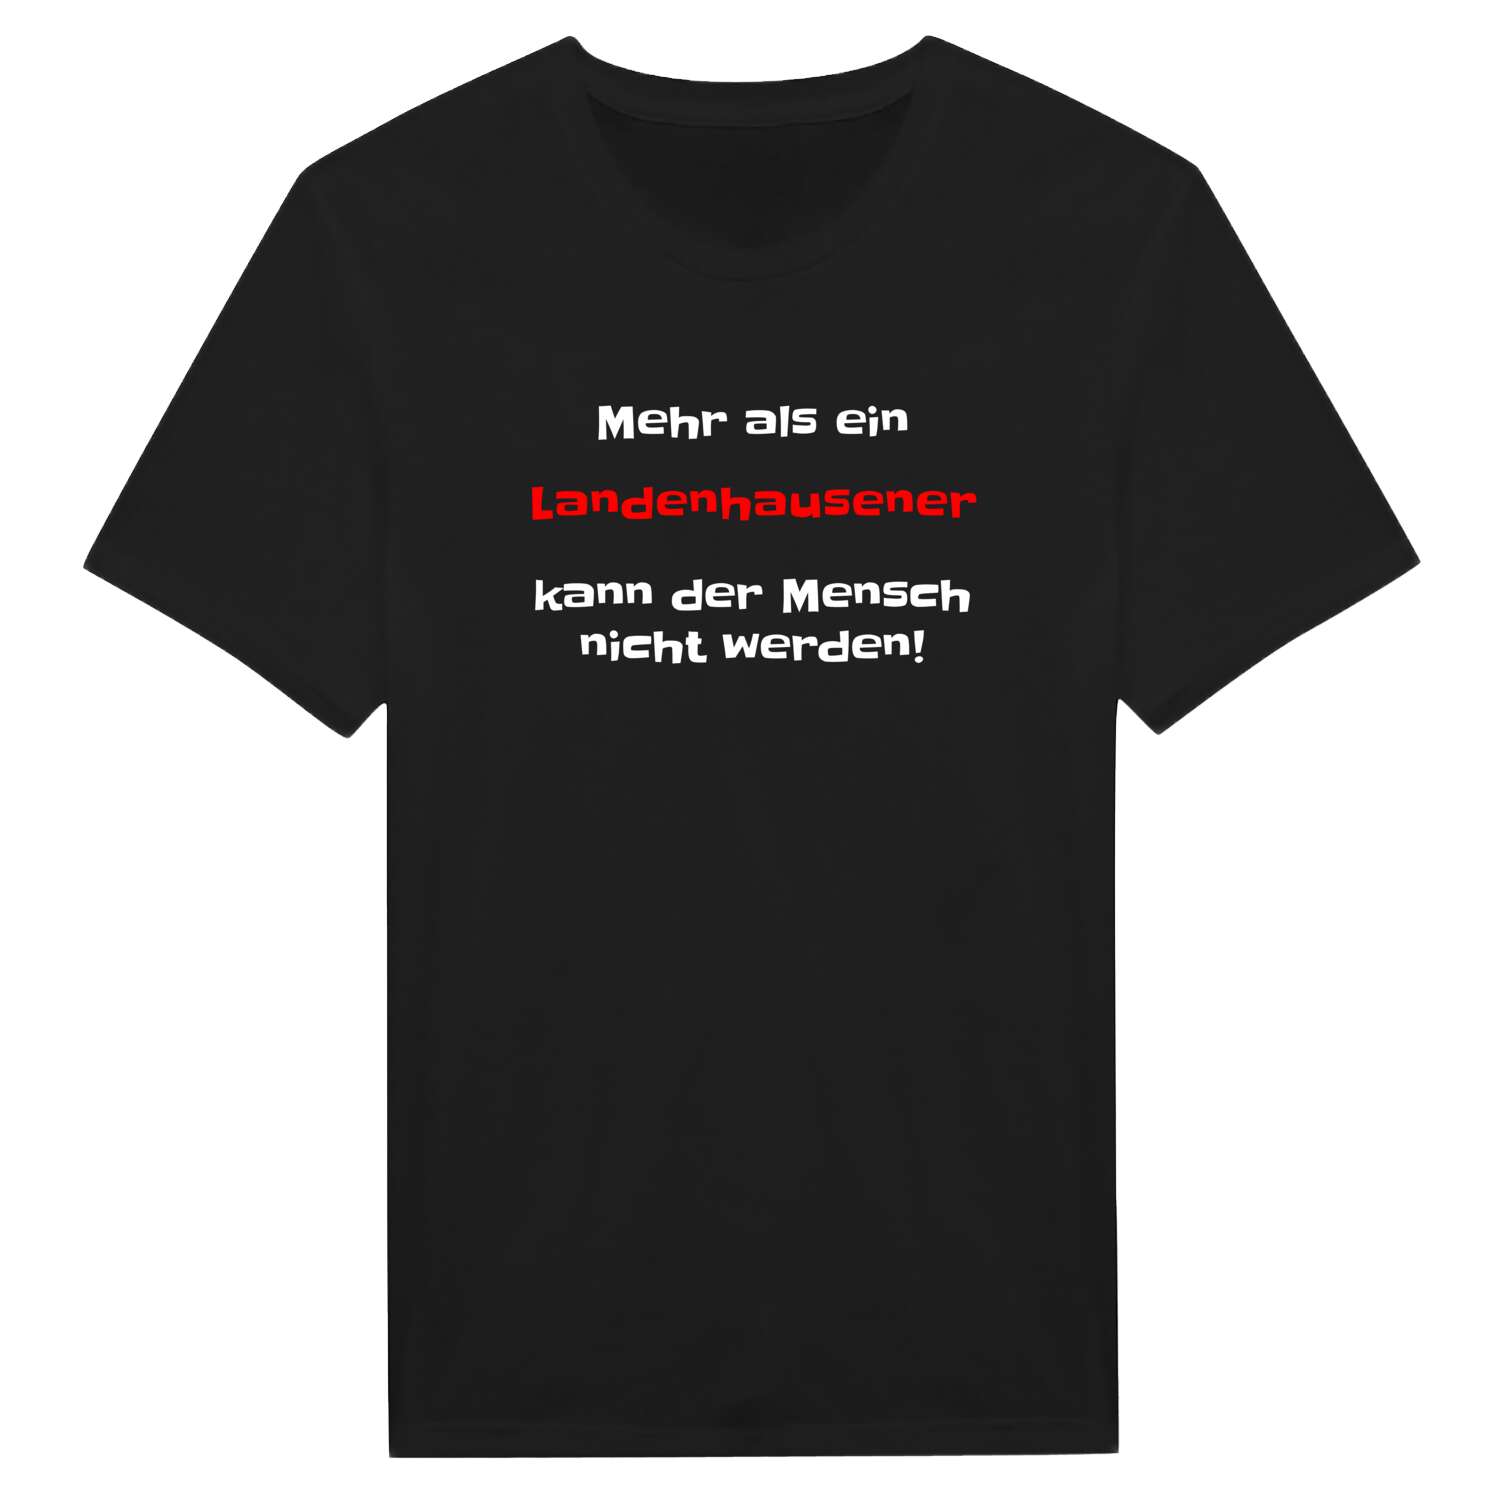 Landenhausen T-Shirt »Mehr als ein«